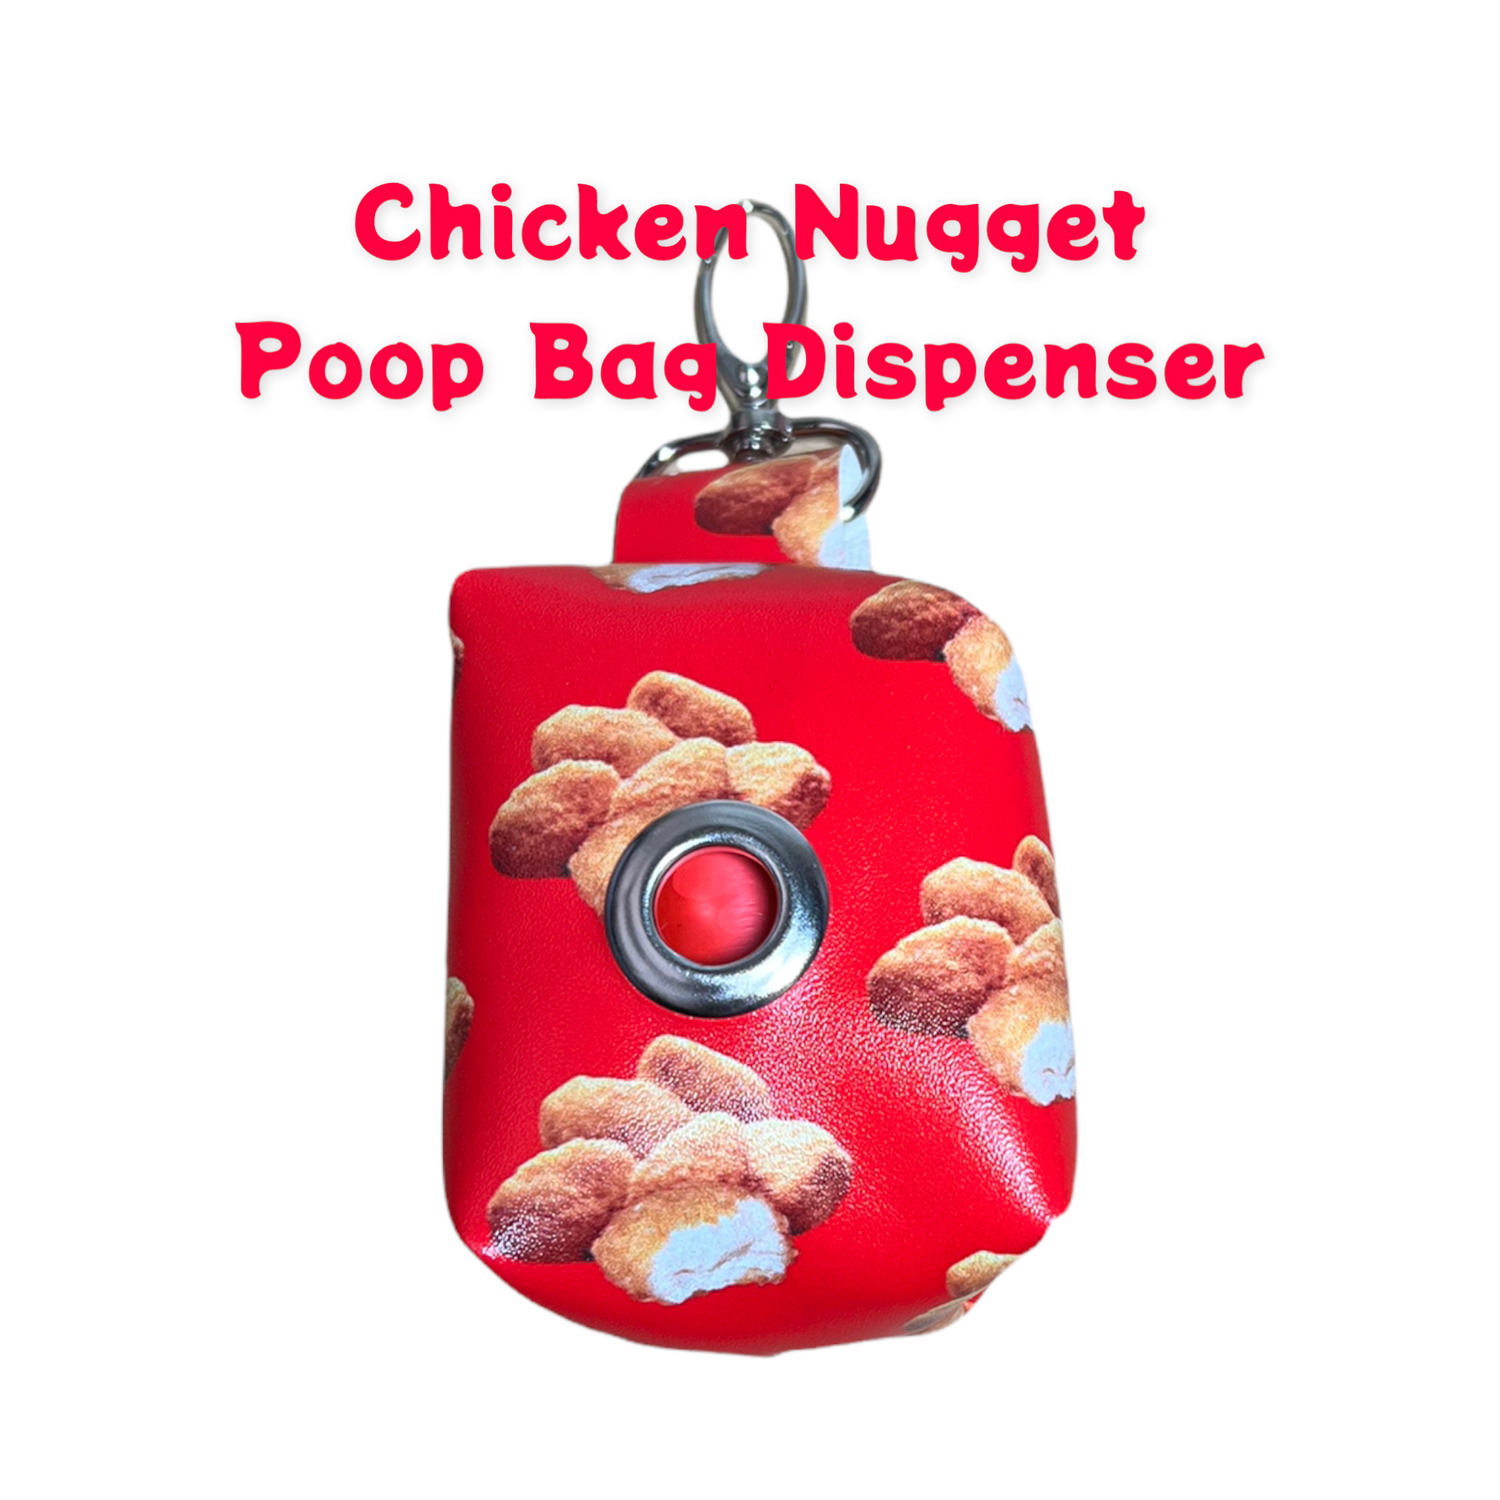 Poop Bag Dispenser